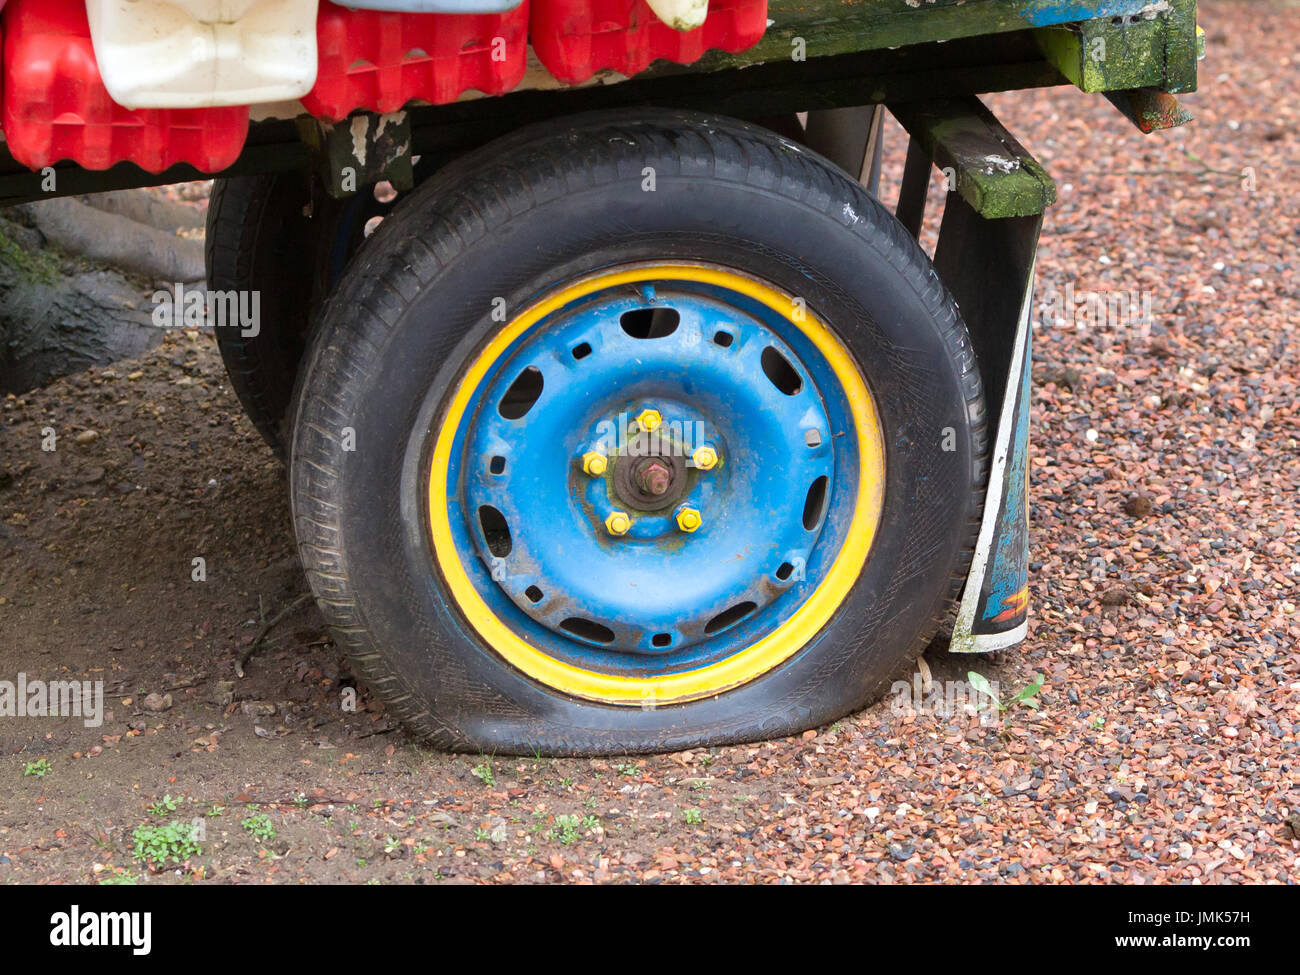 Piatto di pneumatici posteriori su un carrello colorati Foto Stock